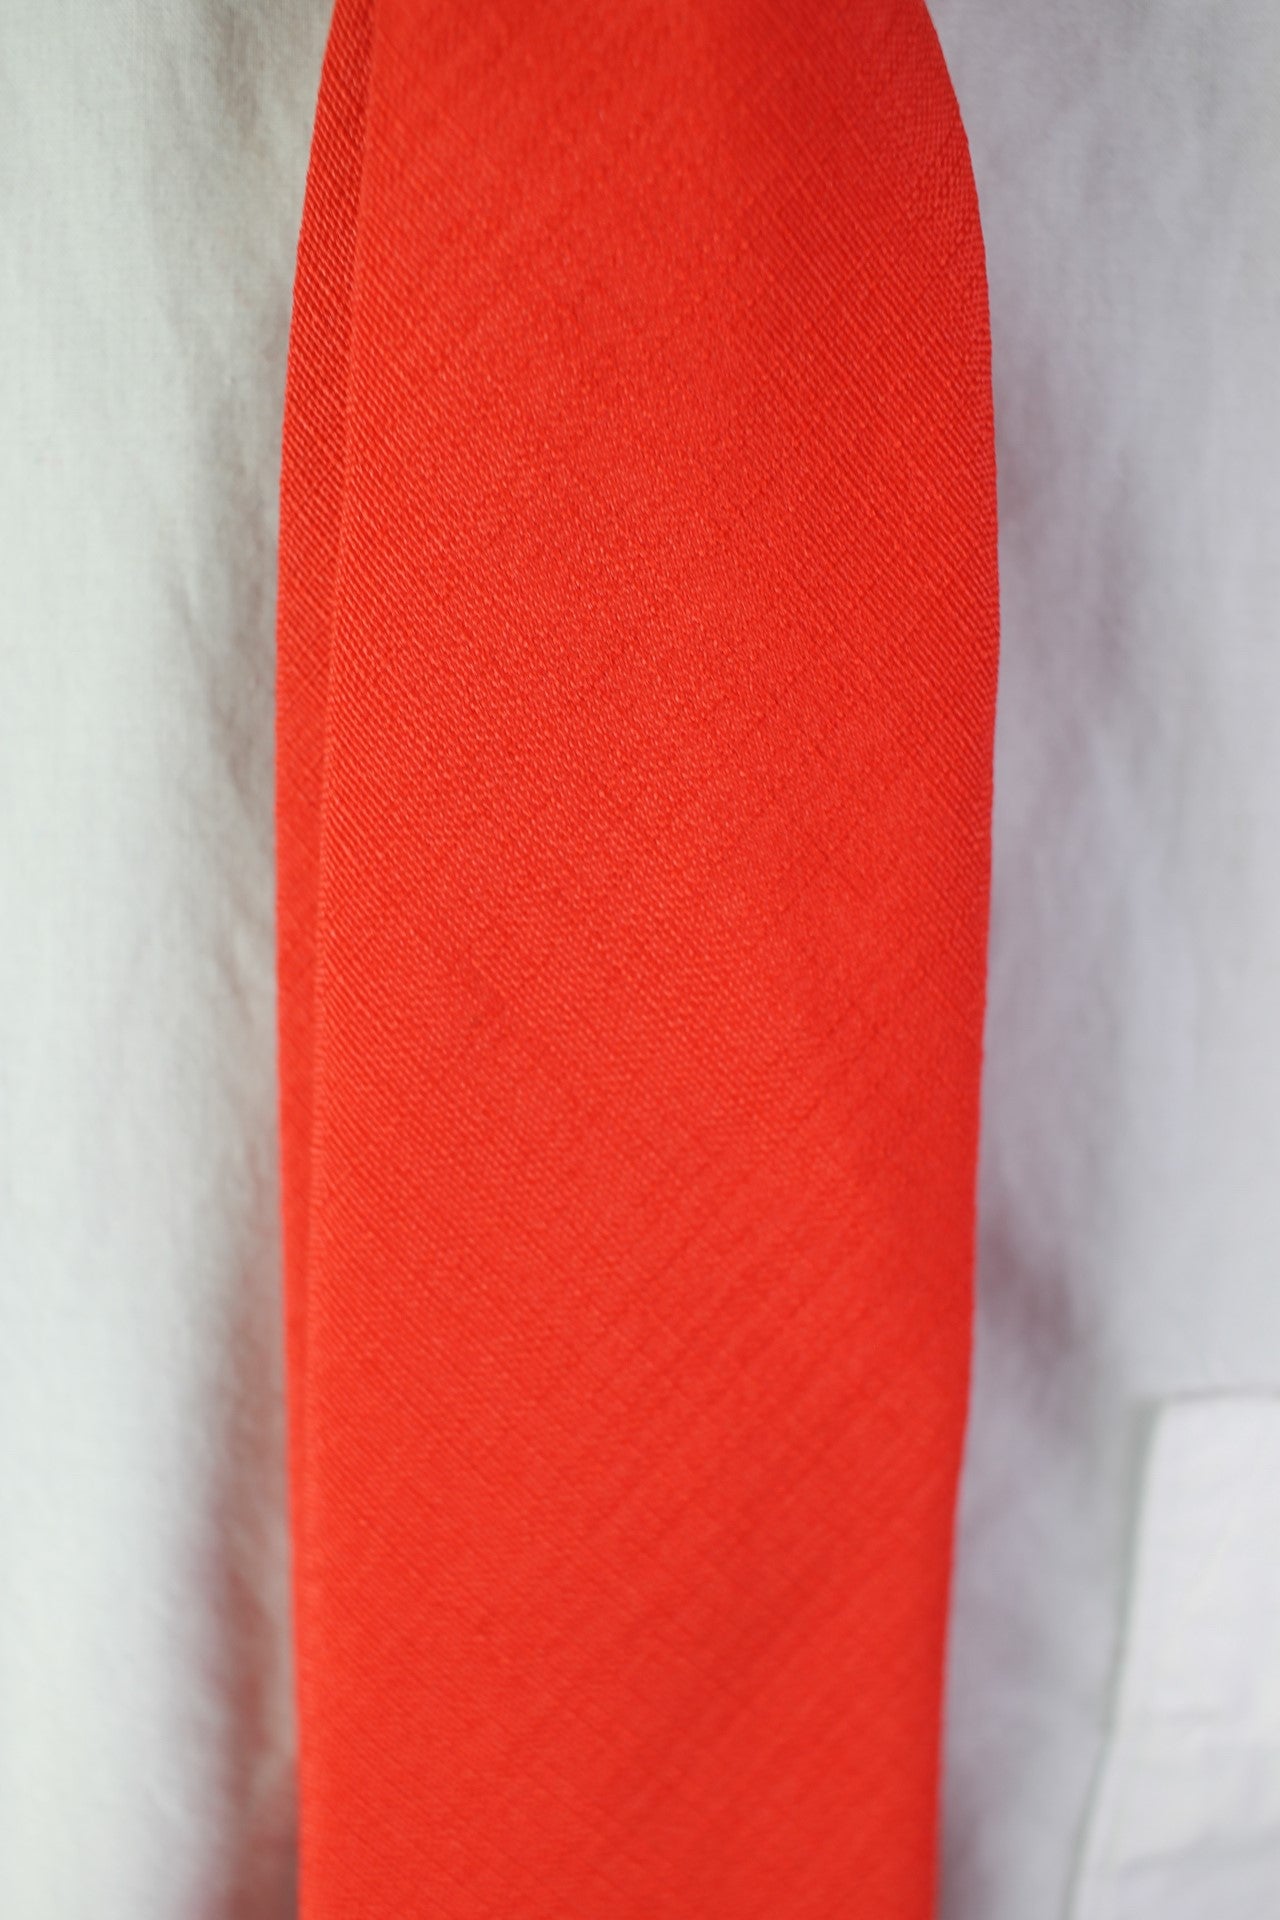 Vintage Baron bright red tie